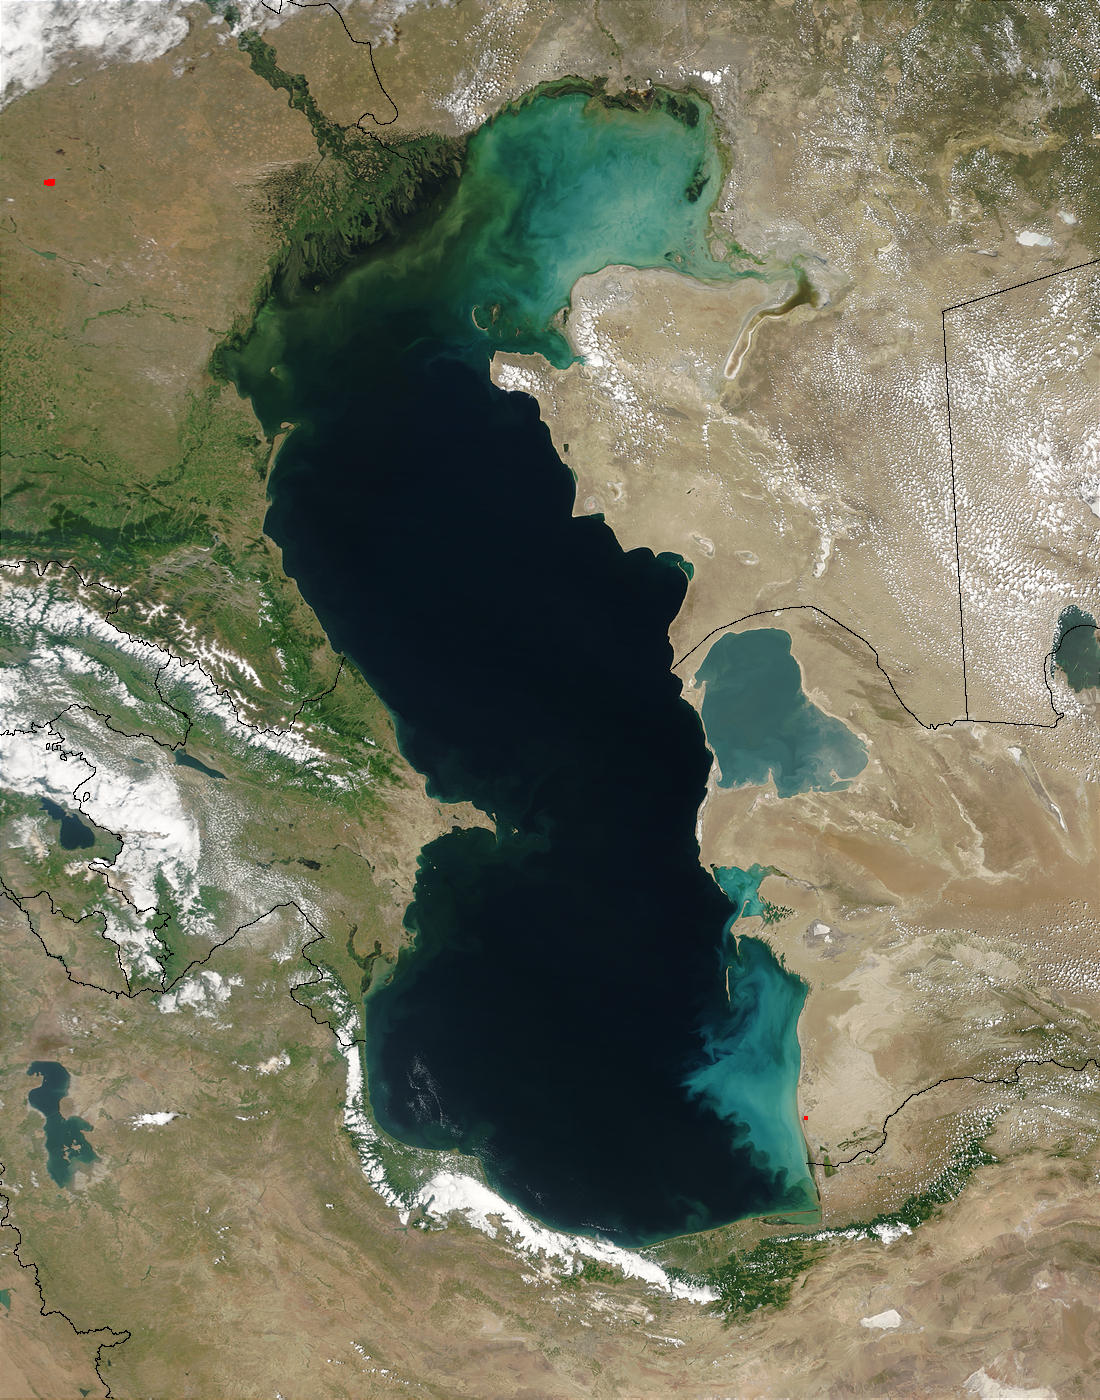 Caspian Region Map